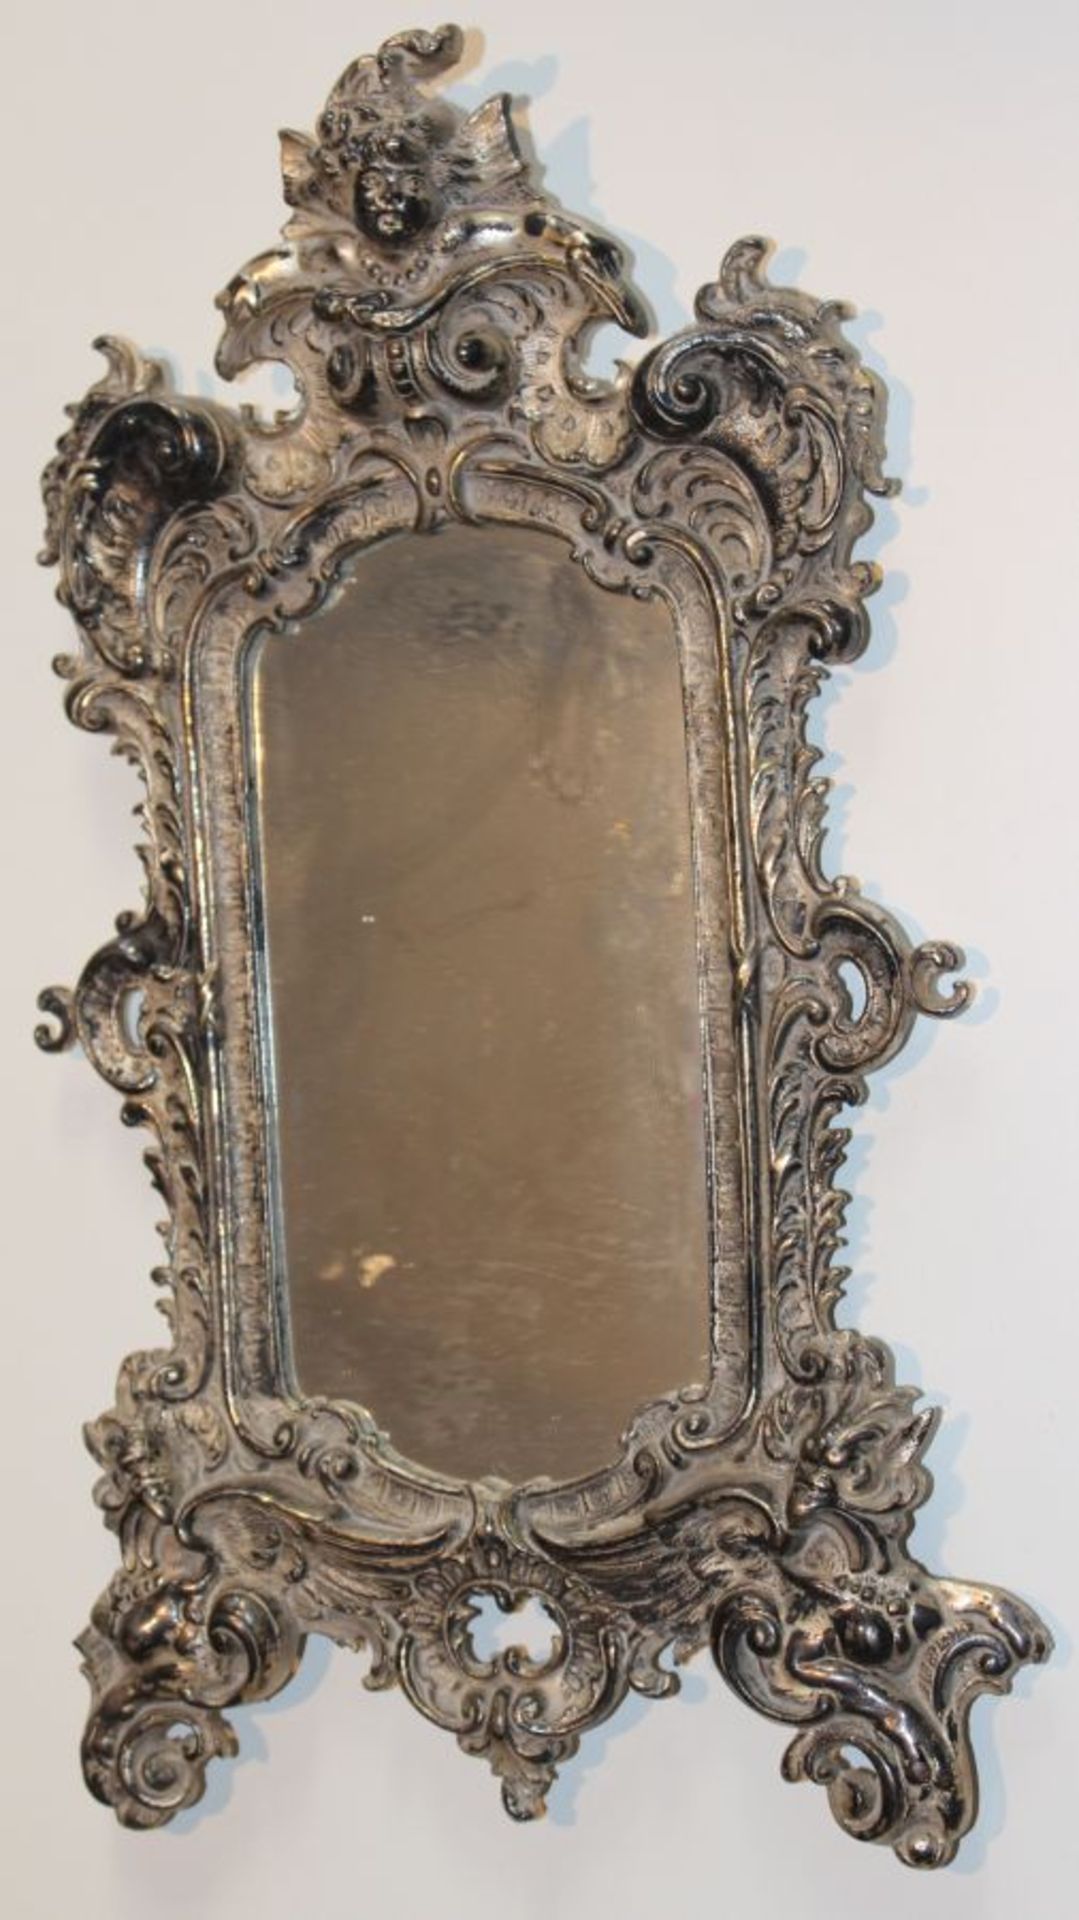 Kleiner Spiegel - wohl deutsch nach 1900 im Barockstil, Metall versilbert, verziert mit Rocaillen